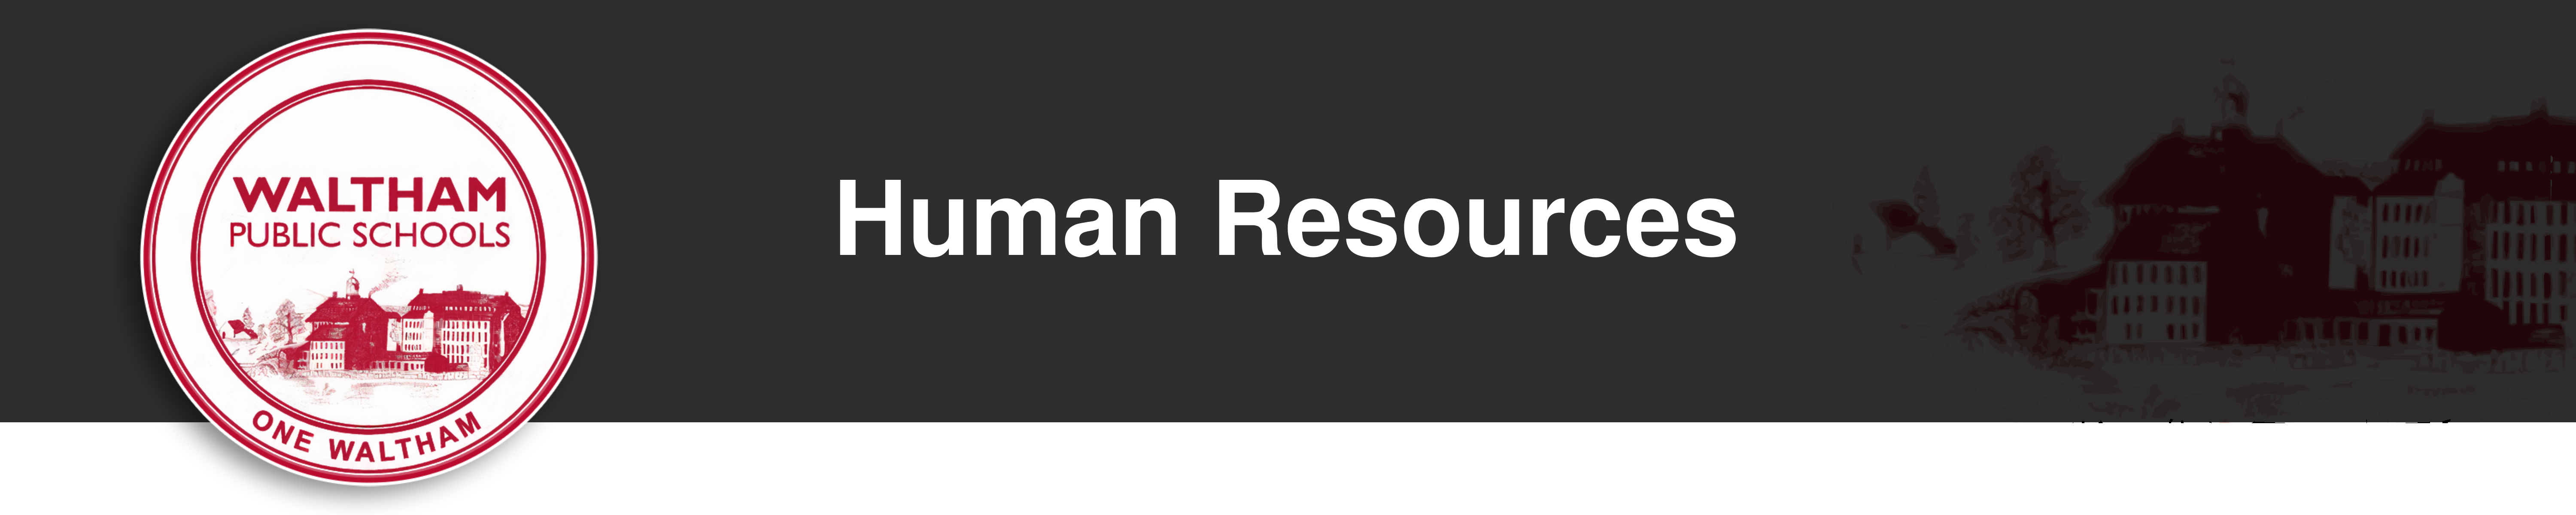 waltham public schools - one waltham (logo) Human Resources